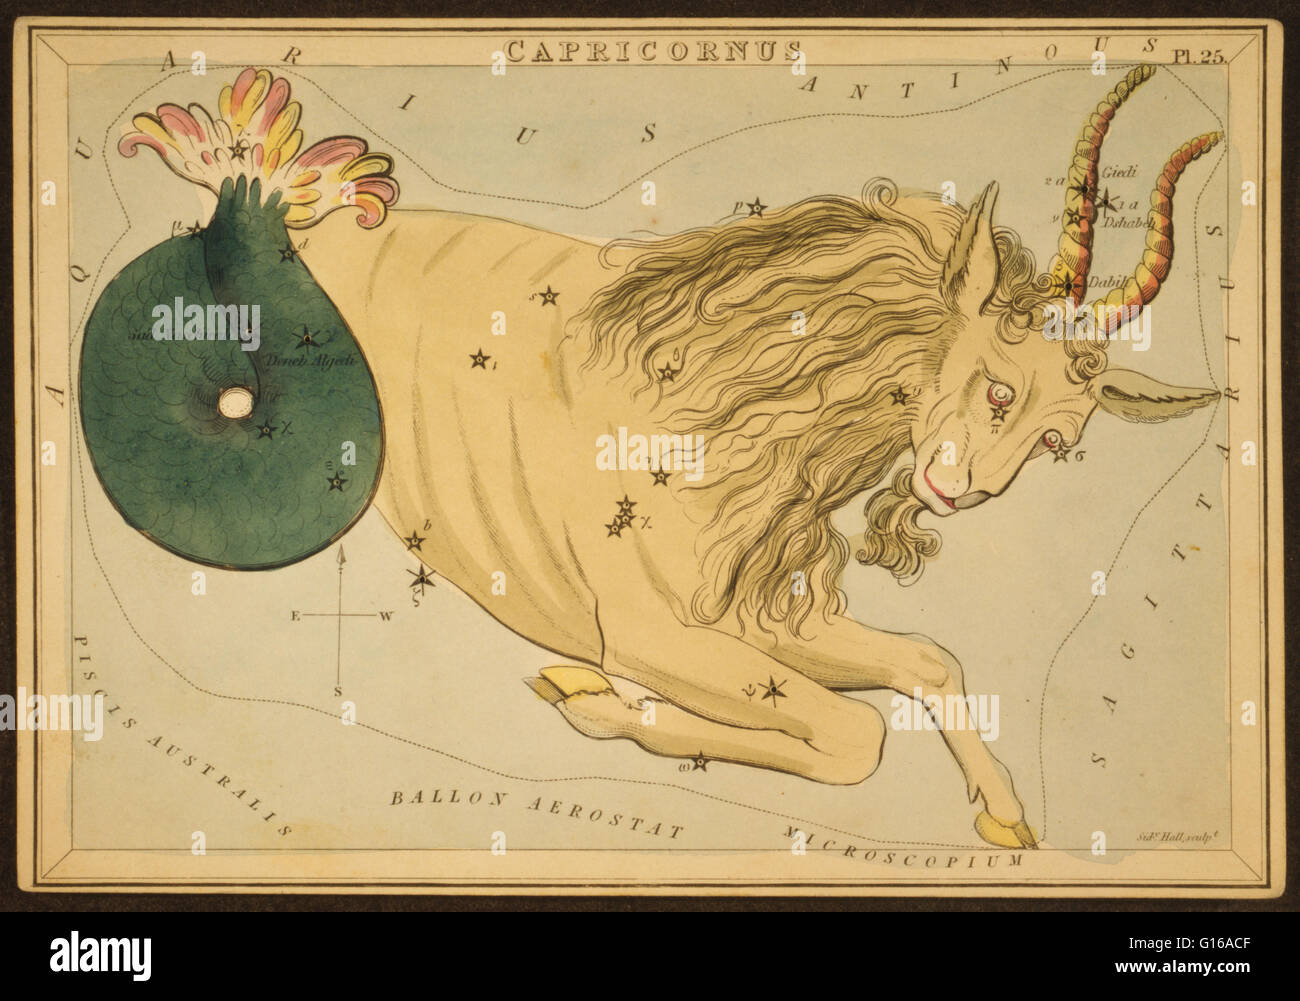 Astronomische Diagramm eine Ziege bildet die Konstellation. Capricornus ist eines der Sternbilder des Tierkreises, heißt oft Steinbock, vor allem, wenn das entsprechende Sternzeichen gemeint. Sein Name ist lateinisch für "gehörnte Ziege" oder "gehen Stockfoto